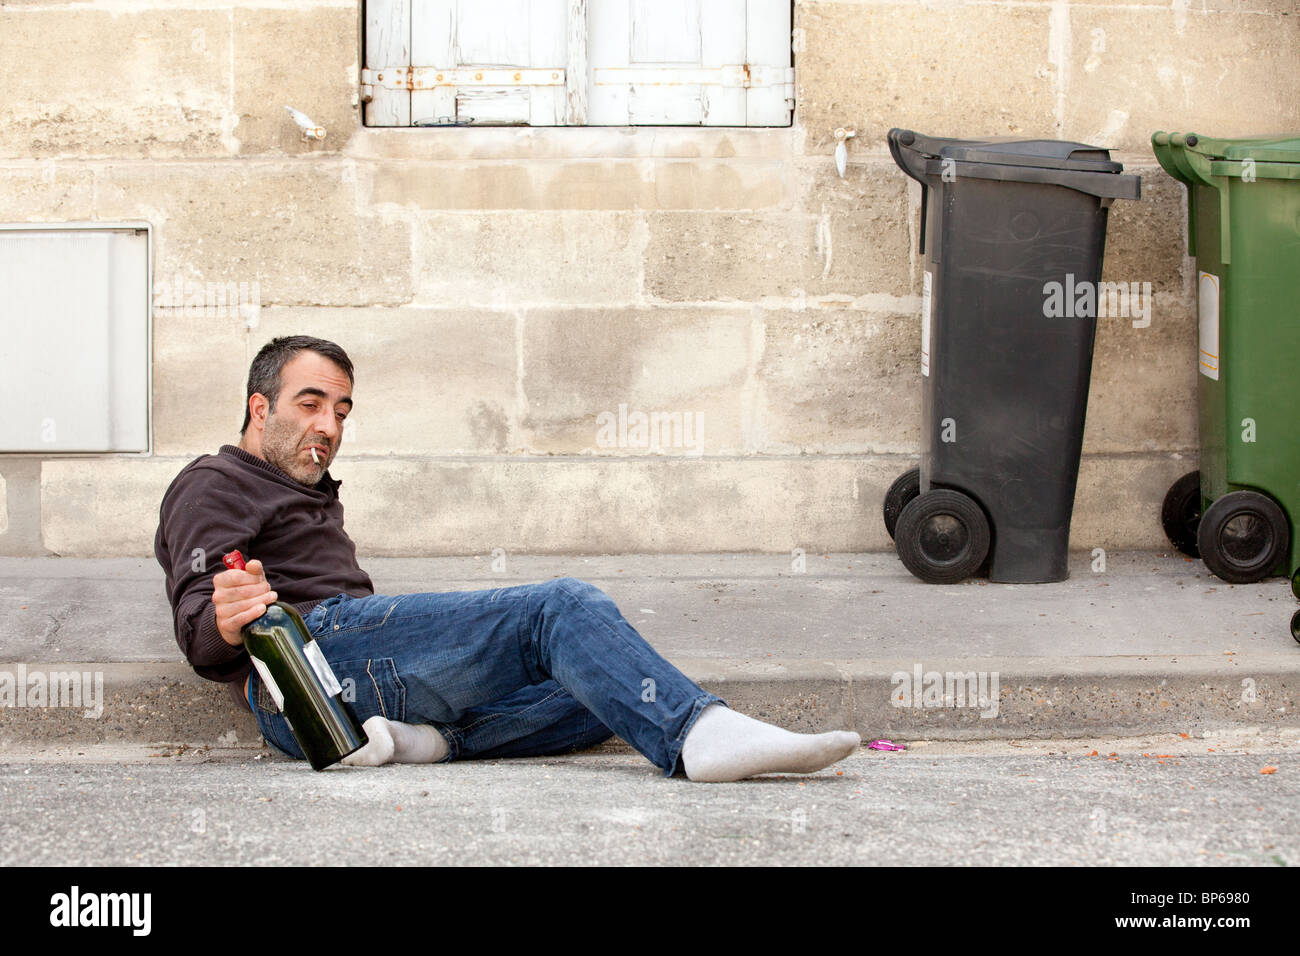 arme Mann betrunken liegen in der Nähe von Mülleimer in Stadtstraße Stockfoto